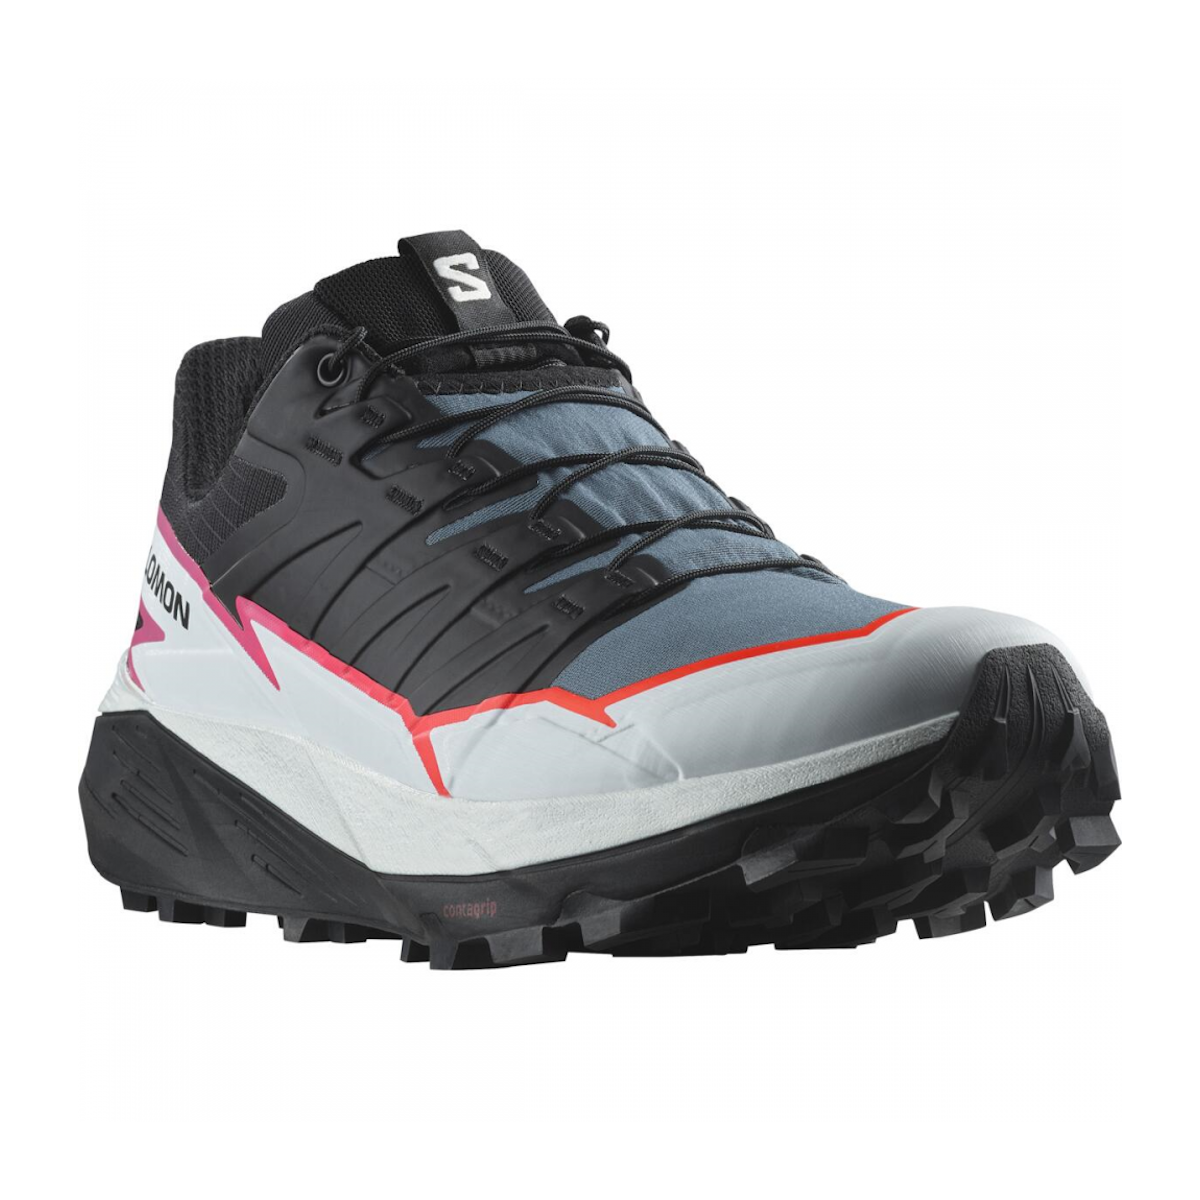 SALOMON THUNDERCROSS W trail running shoes - black/white/pink